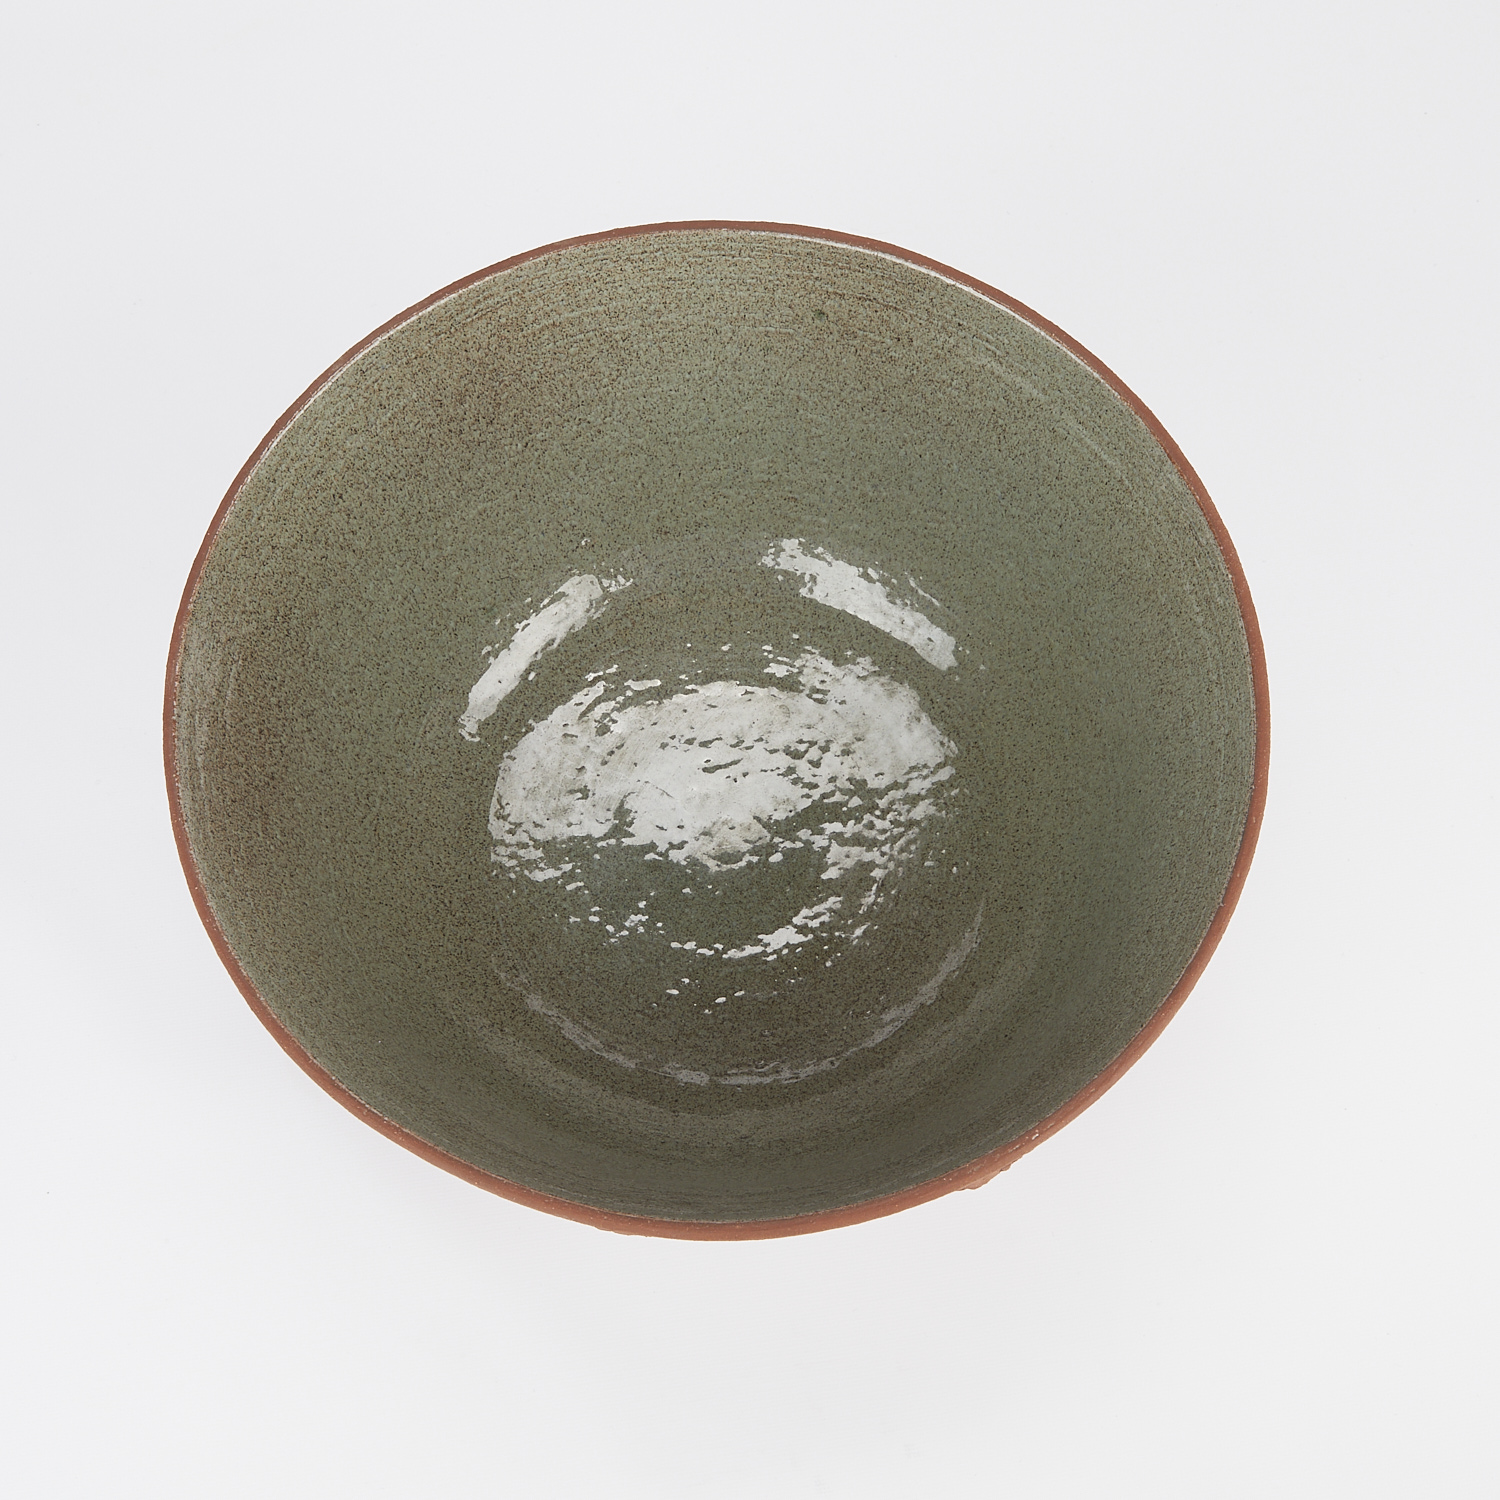 Edwin Scheier Ceramic Bowl w/ Applied Decoration - Image 7 of 13